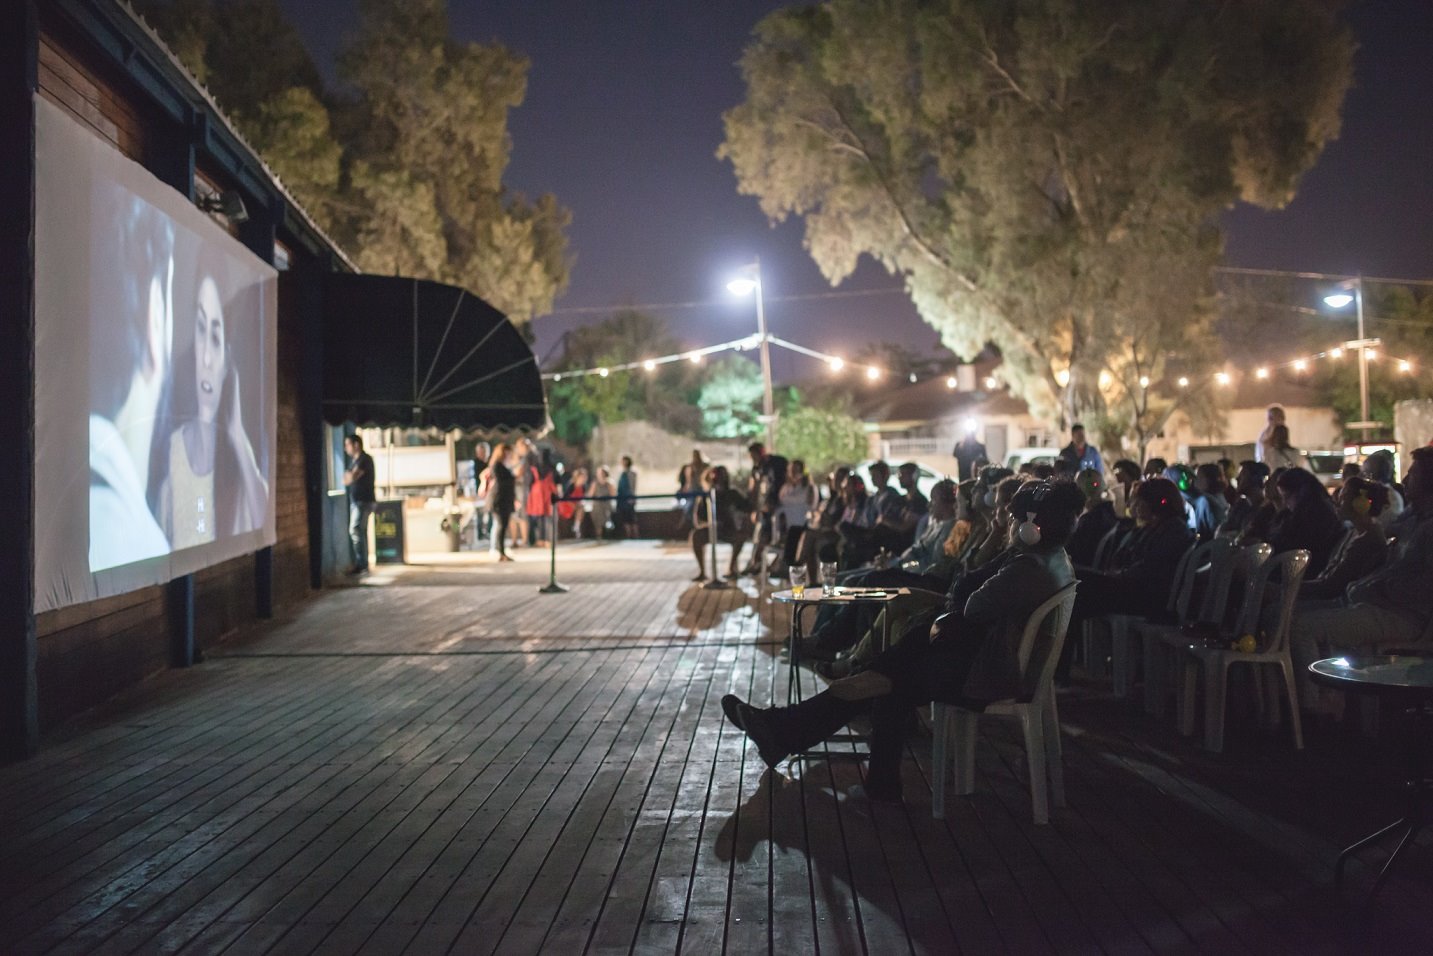 פסטיבל הסרט הקצר בבאר שבע, צילום מעיין קאופמן